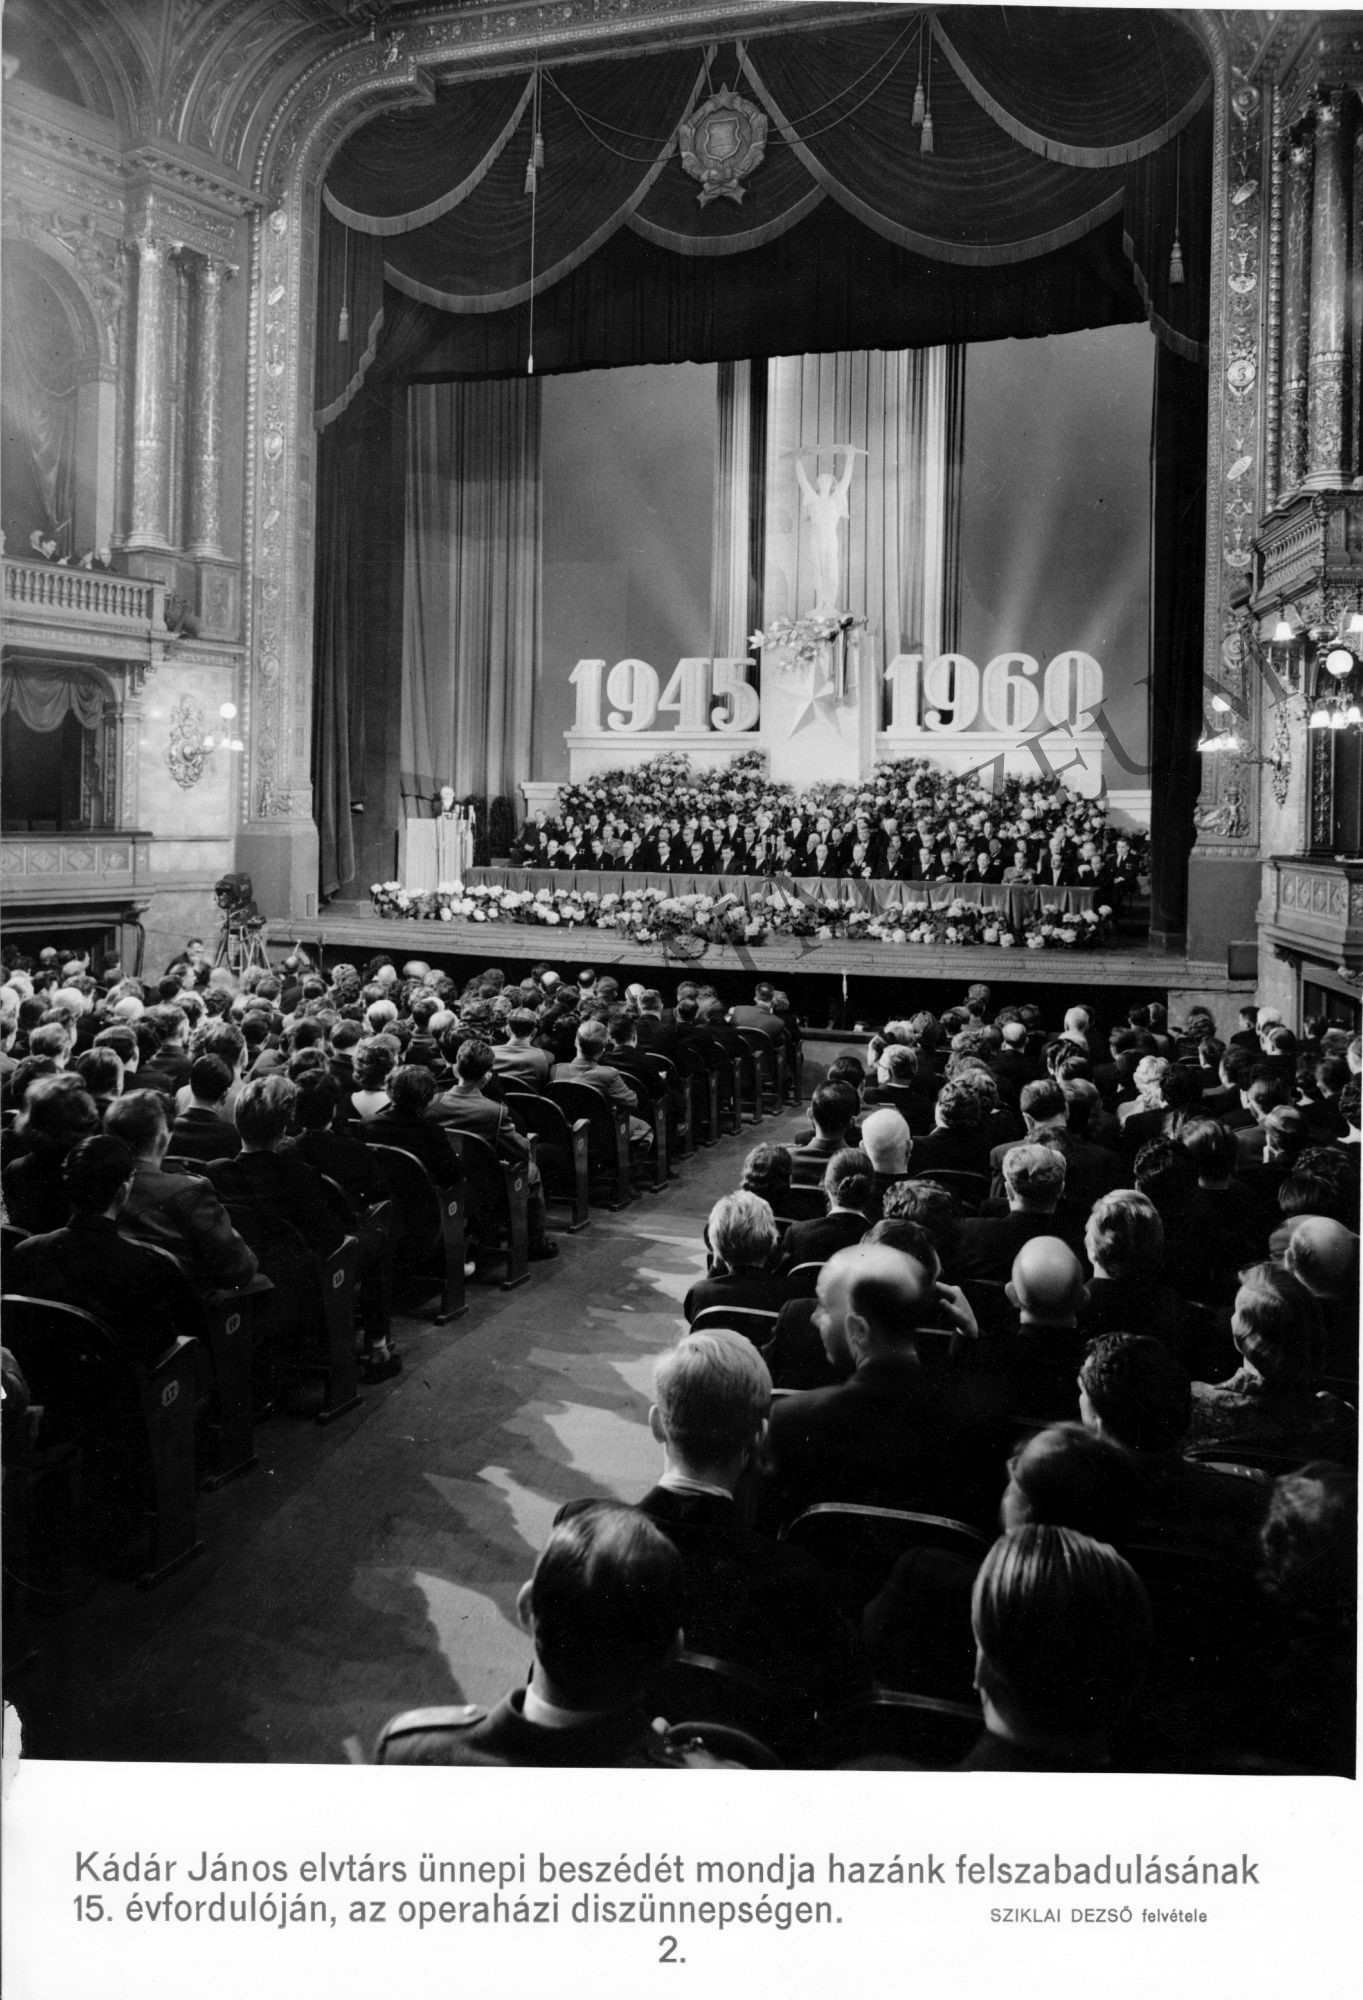 Hazánk felszabadulásának 15. évfordulóján Kádár János ünnepi beszédet mond az operaházi ünnepségesn (Rippl-Rónai Múzeum CC BY-NC-SA)